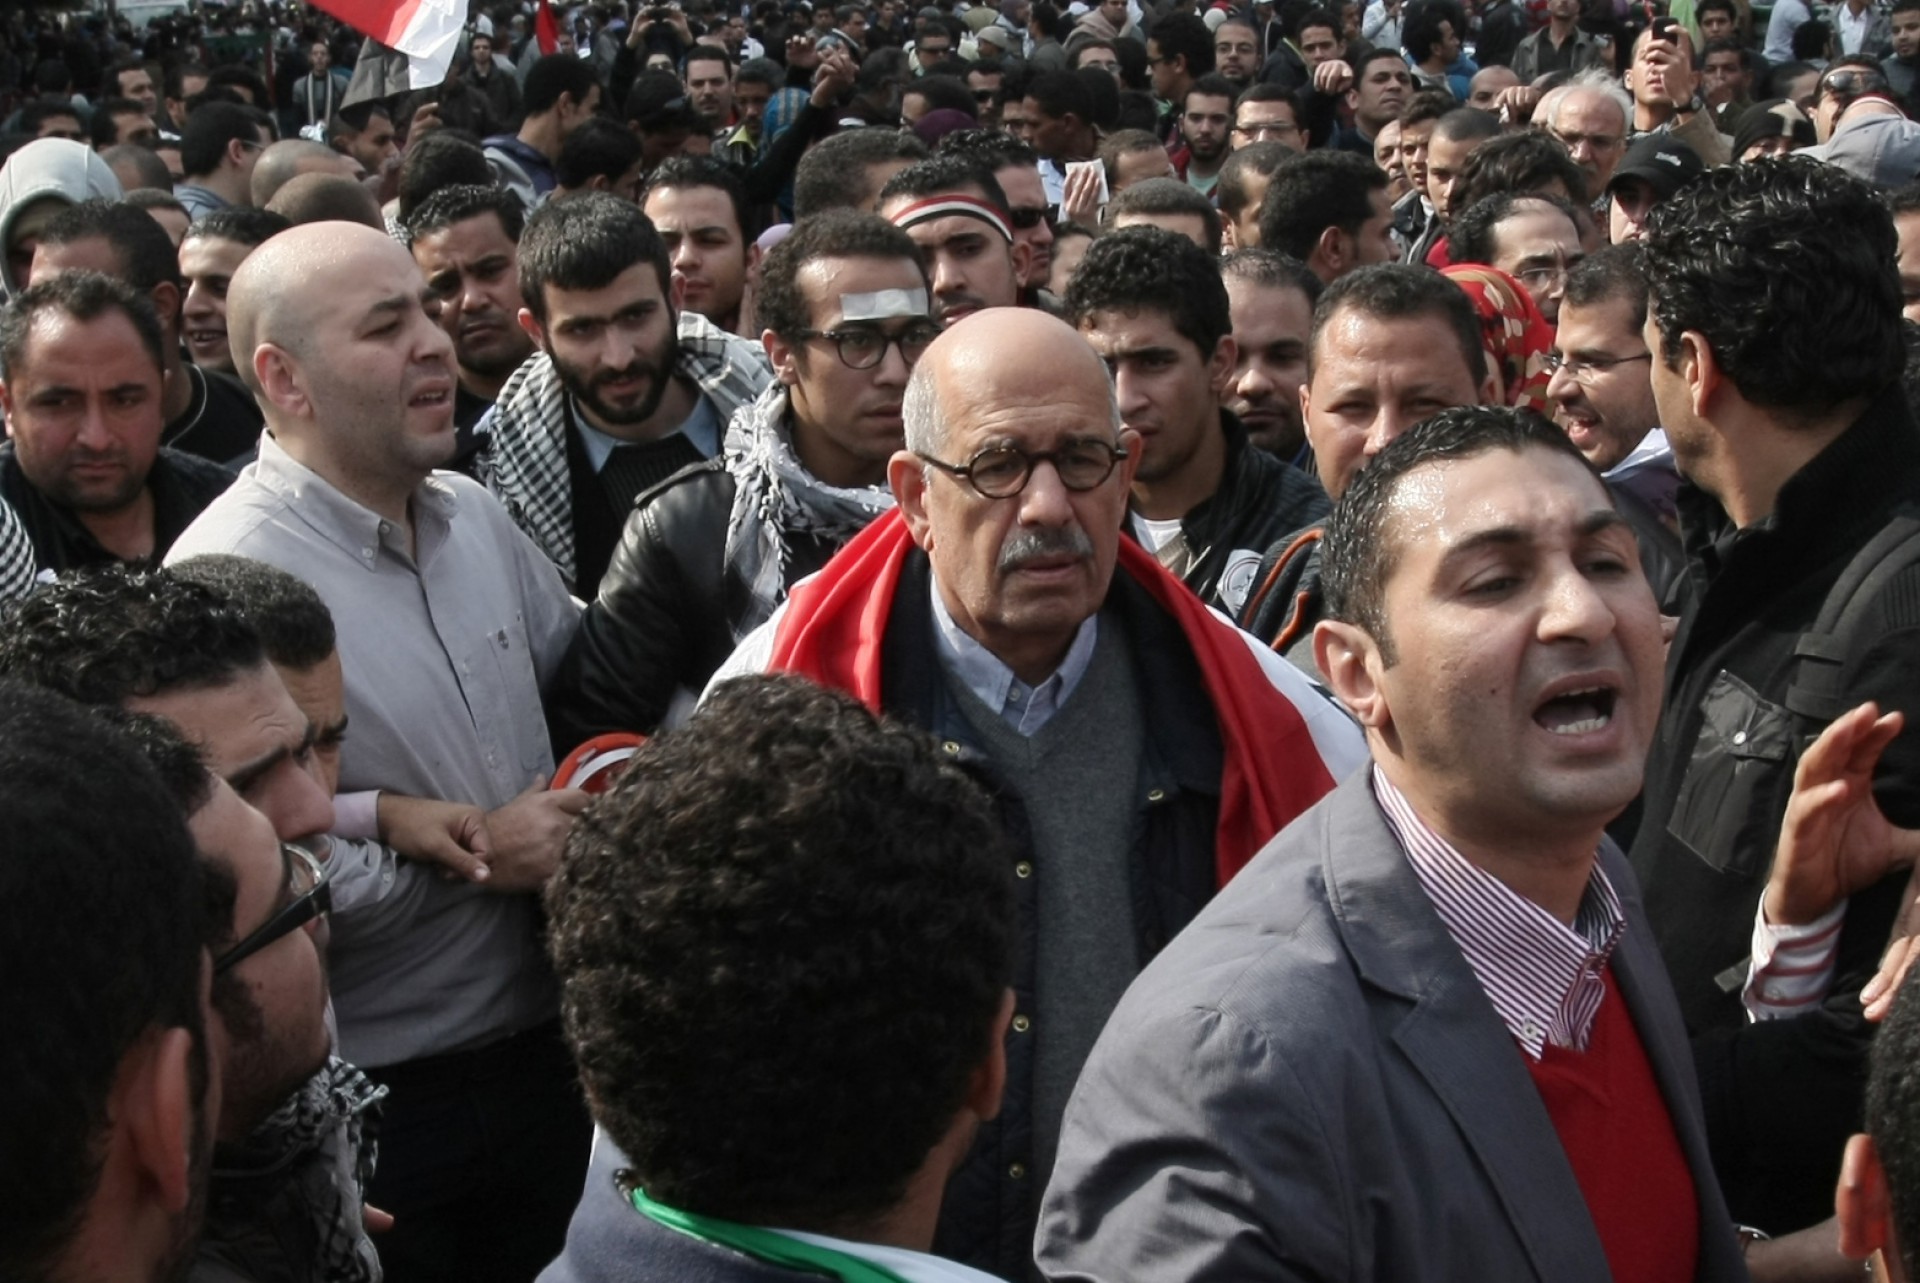 (ARQUIVOS) Nesta foto de arquivo tirada em 25 de novembro de 2011, o ex-chefe da vigilância nuclear egípcia da ONU e candidato à presidência Mohamed ElBaradei (C), com uma bandeira nacional nos ombros, se junta a milhares de manifestantes na praça Tahrir, no Cairo, para apelar à decisão militares para entregar o poder a um governo de salvação nacional. - Dez anos atrás, quando protestos explodiram em todo o mundo árabe, os governos ocidentais falharam em cumprir um compromisso com o destino e ajudar a alimentar sonhos de democracia, perdendo uma chance sem precedentes de moldar uma reforma real. A história não os julgará com gentileza, dizem muitos dos que estiveram lá e conversaram com a AFP no 10º aniversário da Primavera Árabe, sobre por que uma década após sua promessa inicial murchou e quase morreu. (Foto de Mahmud Hams / AFP)